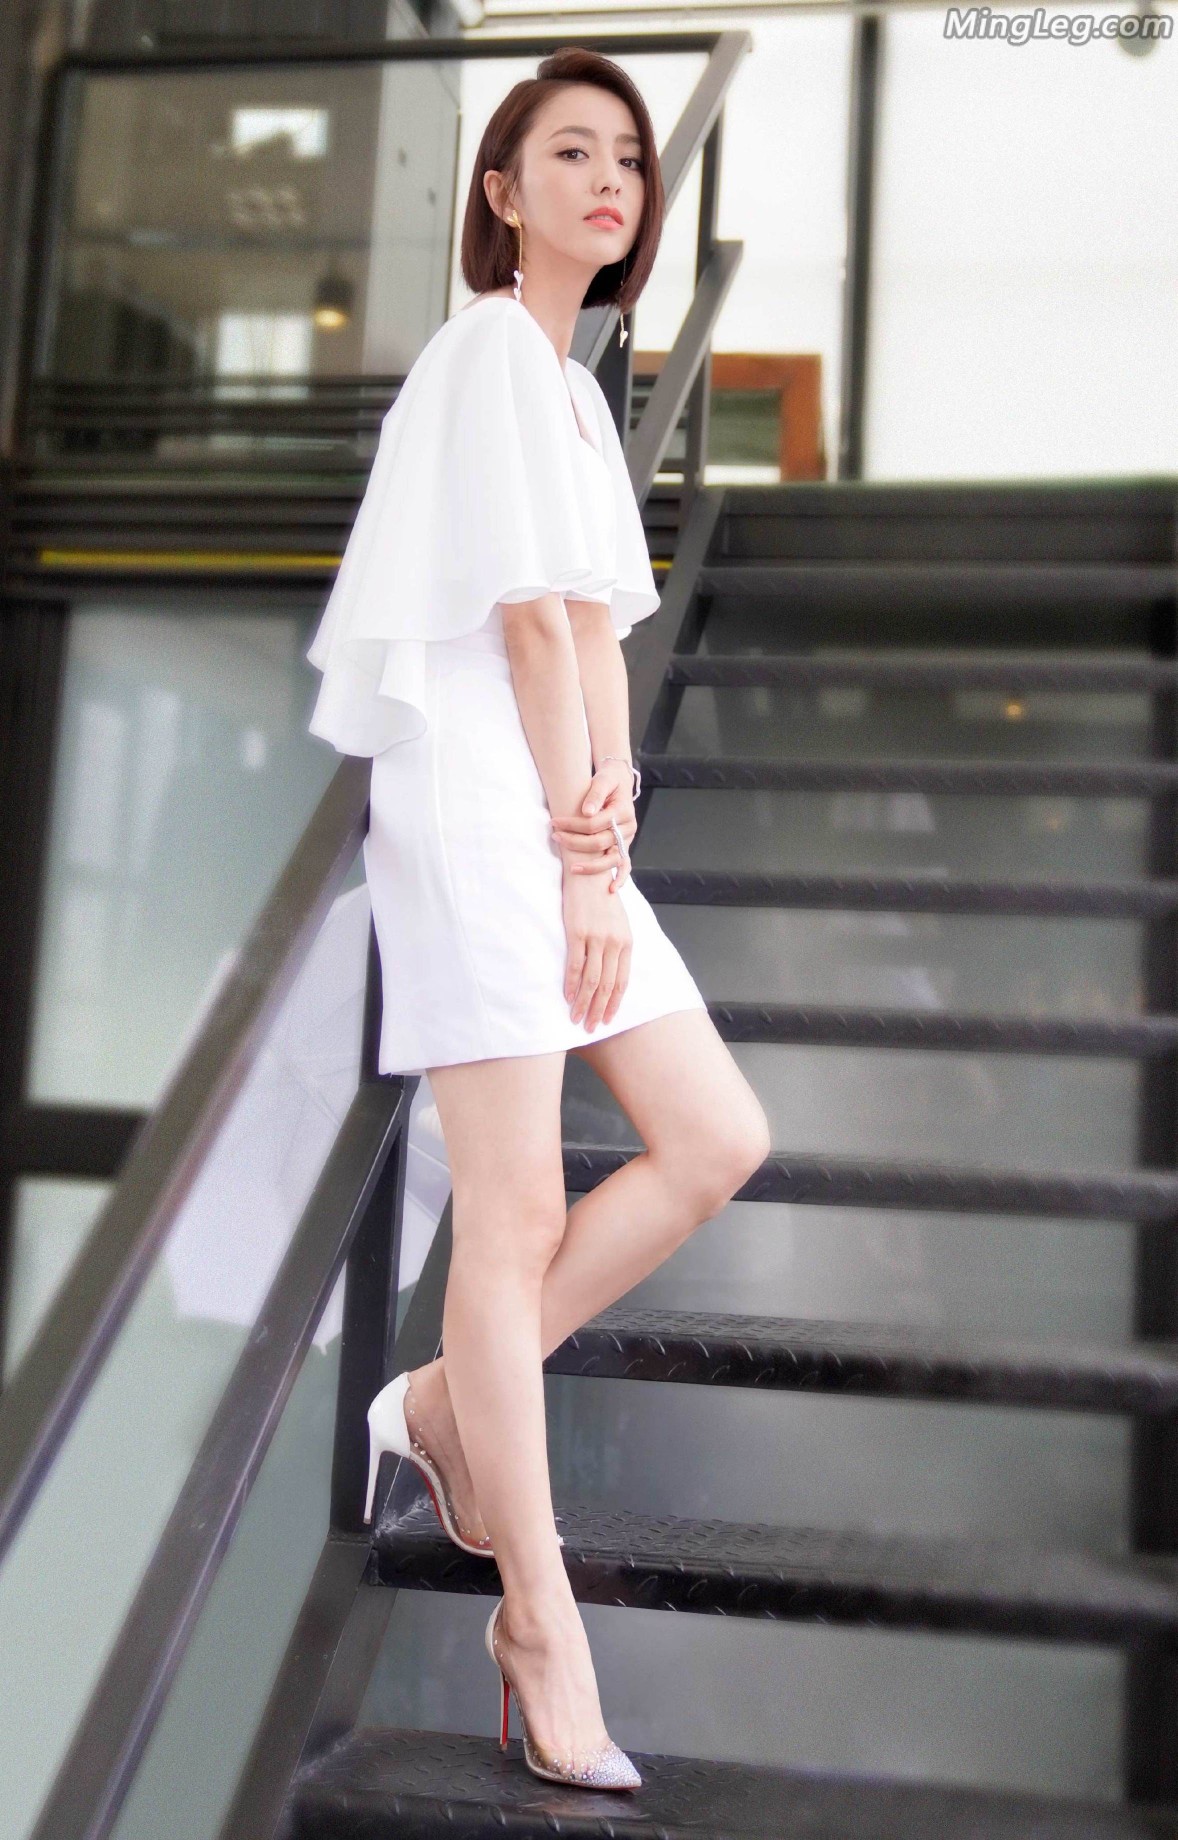 佟丽娅穿复古开叉黑裙秀美腿 身材高挑气质优雅-搜狐大视野-搜狐新闻